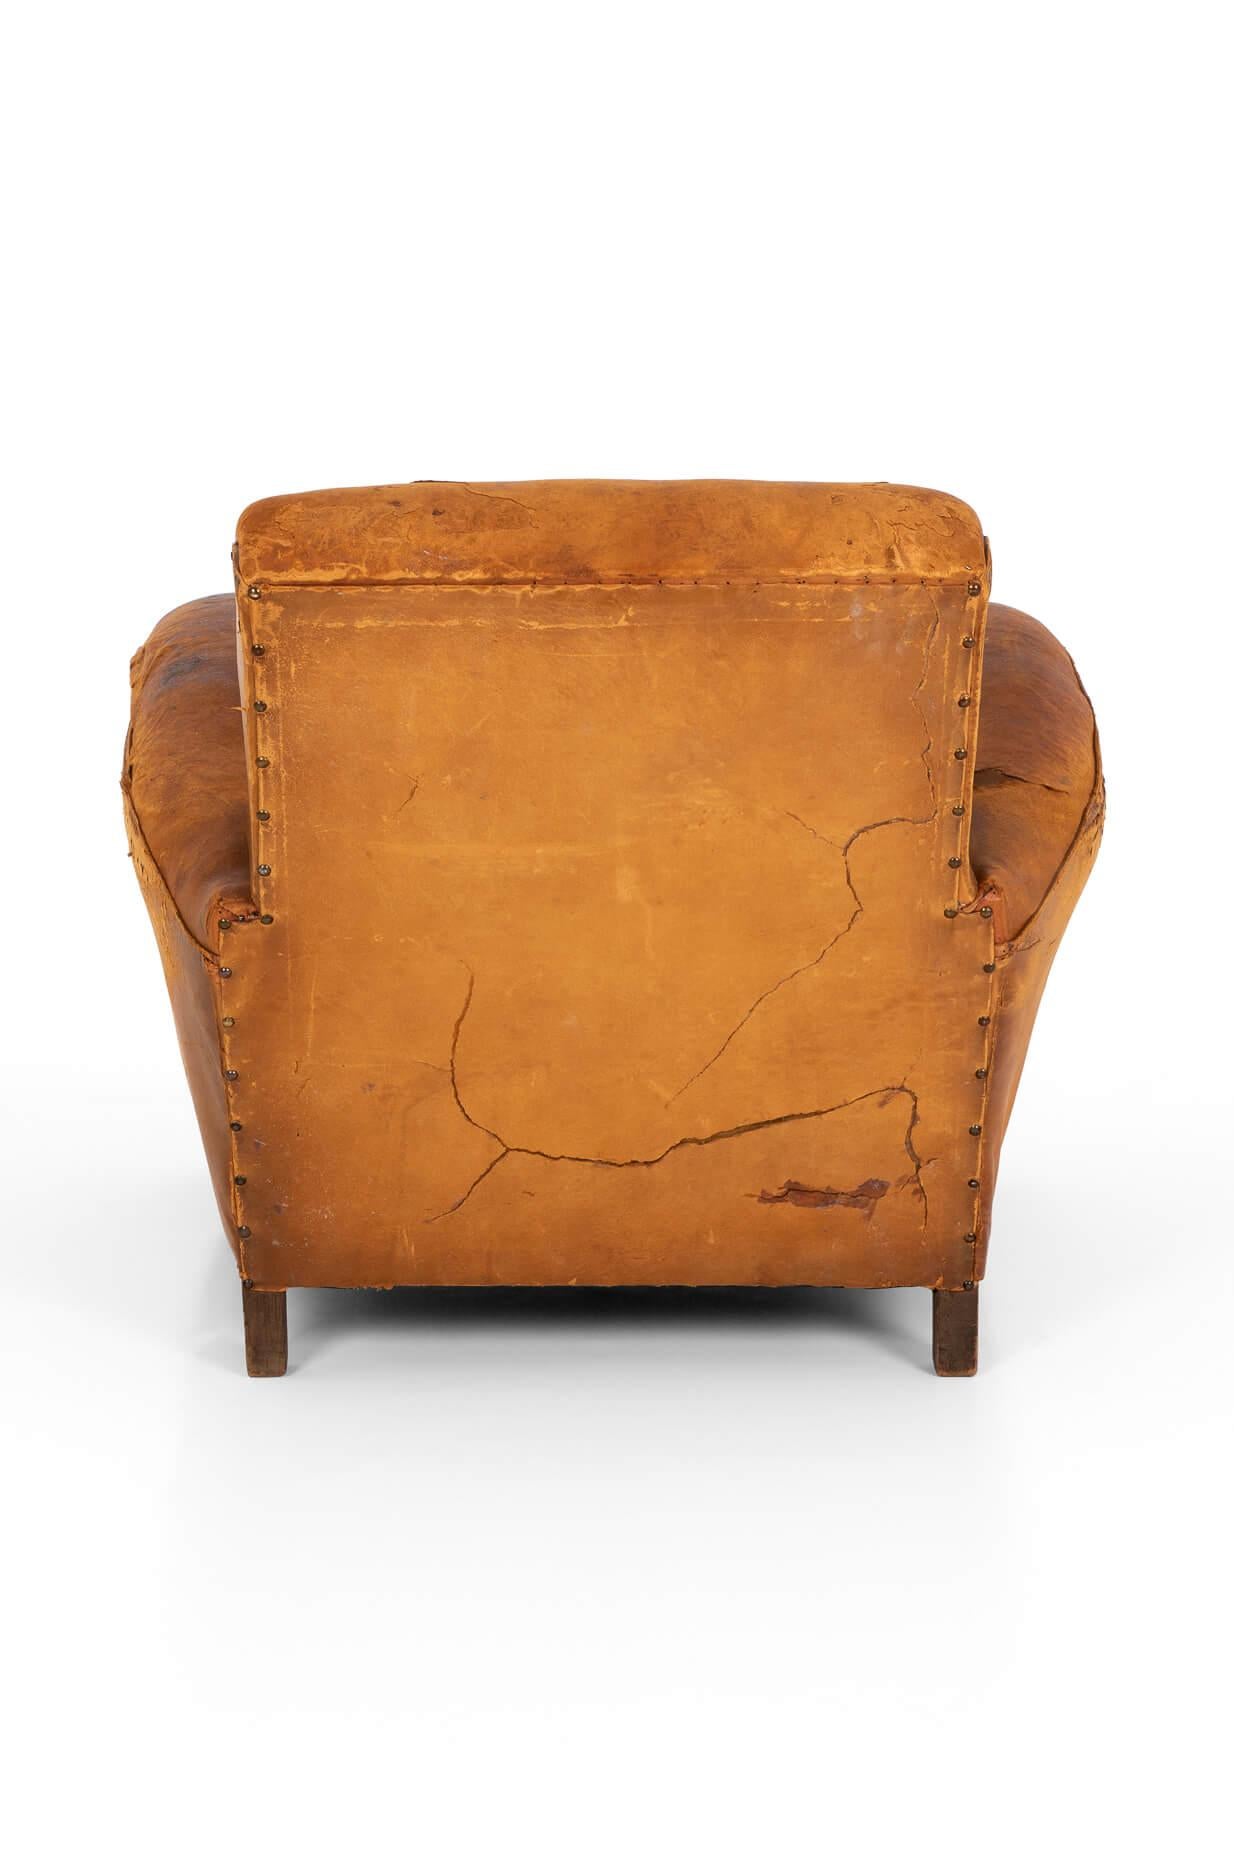 20th Century Art Deco Rich Tan Leather Club Chair in Oak Frame, circa 1930